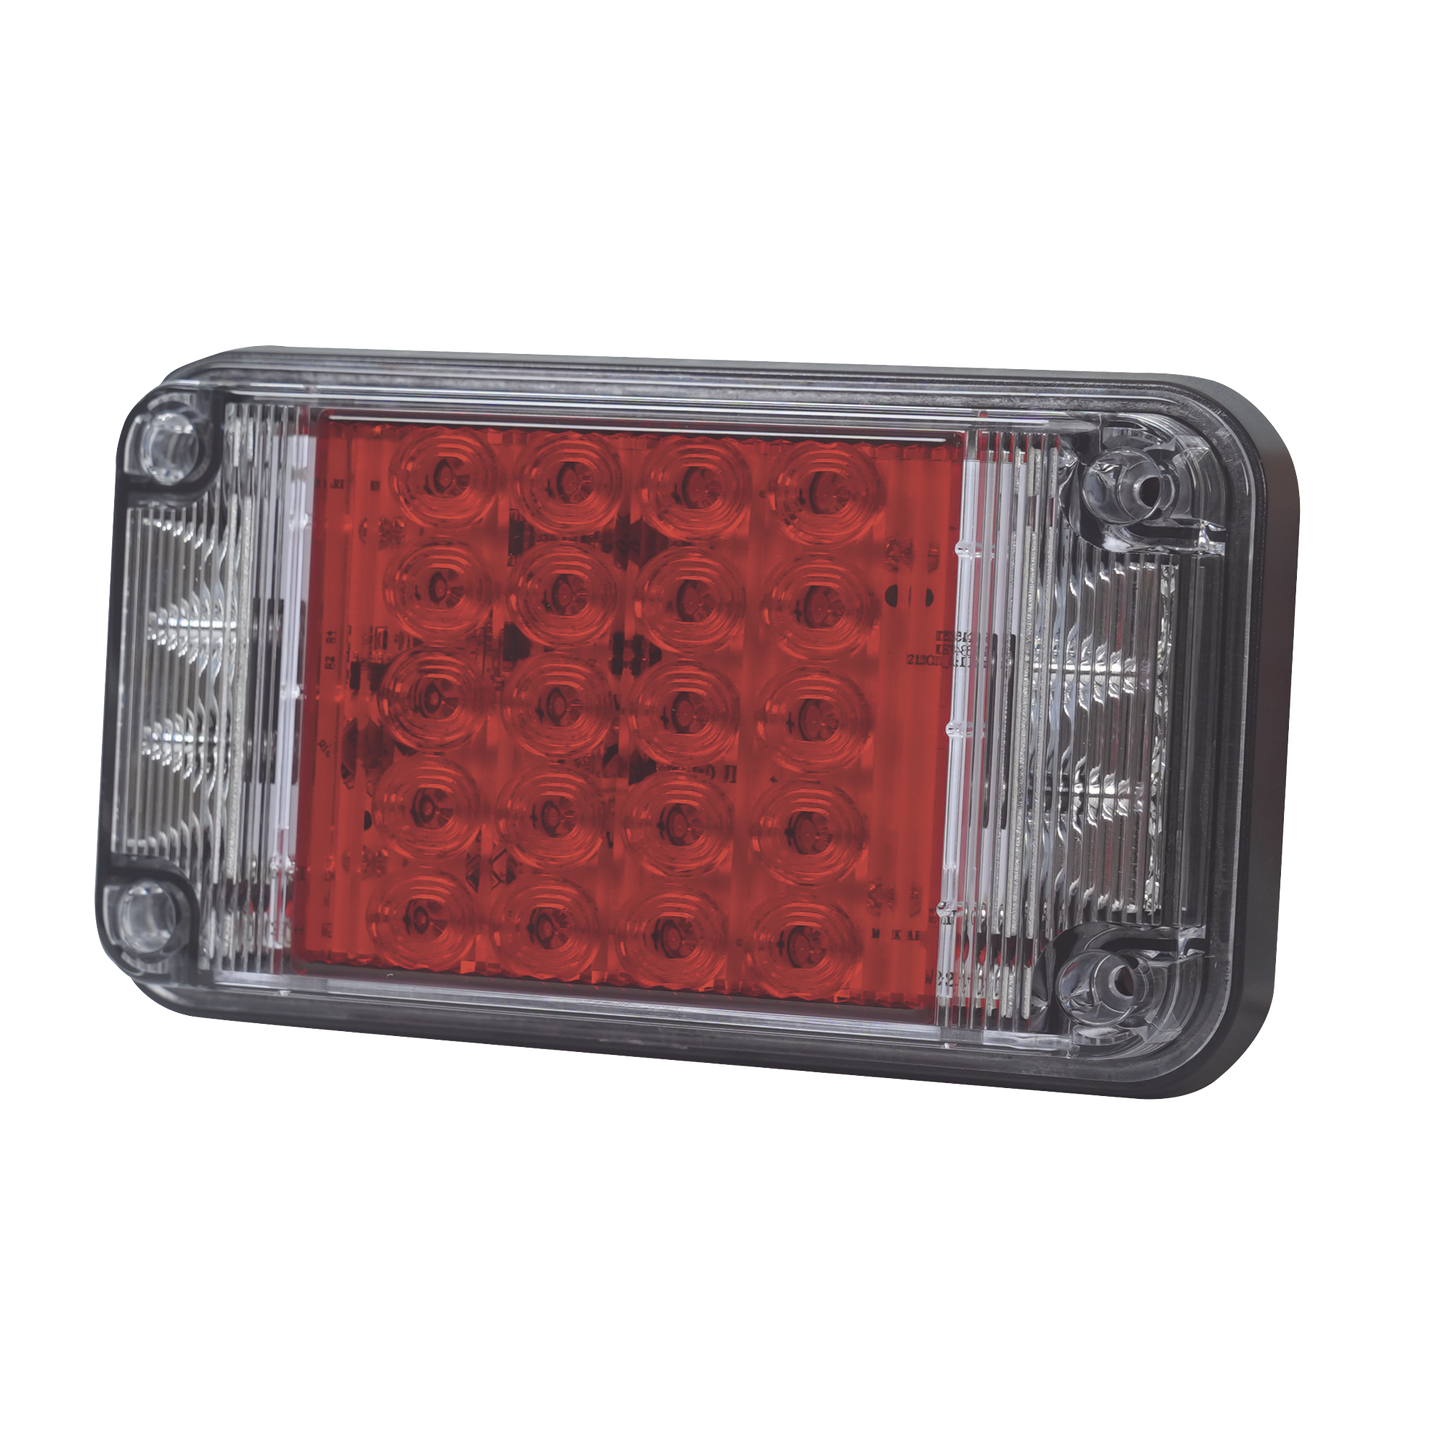 Luz de Advertencia de 7X4", Color Rojo, Con Luces de Trabajo, Ideal para Ambulancias